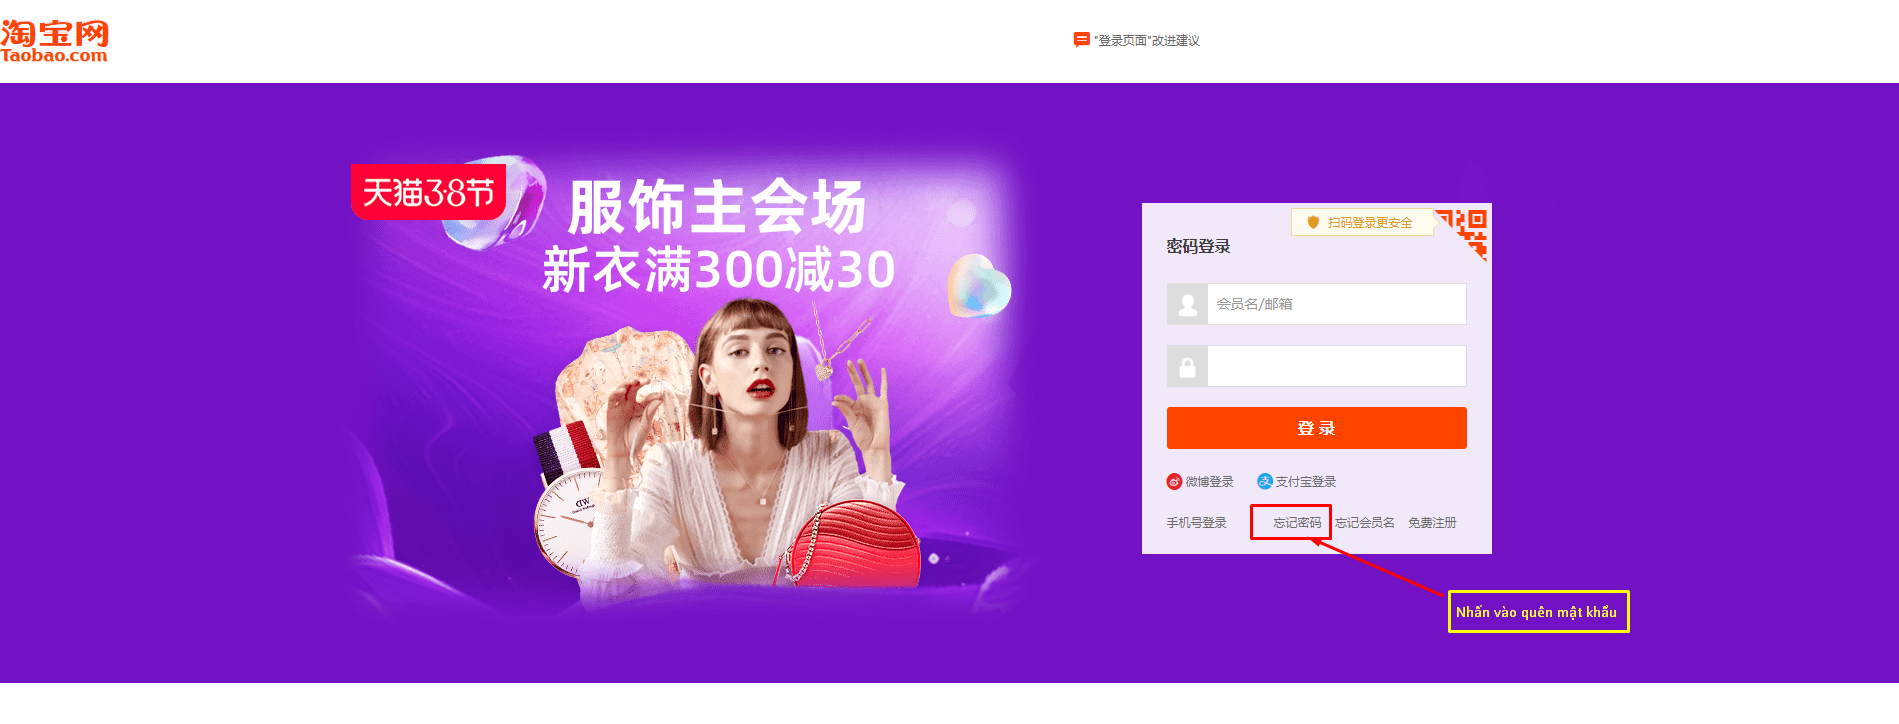 Cách lấy lại tài khoản, mật khẩu Taobao.com